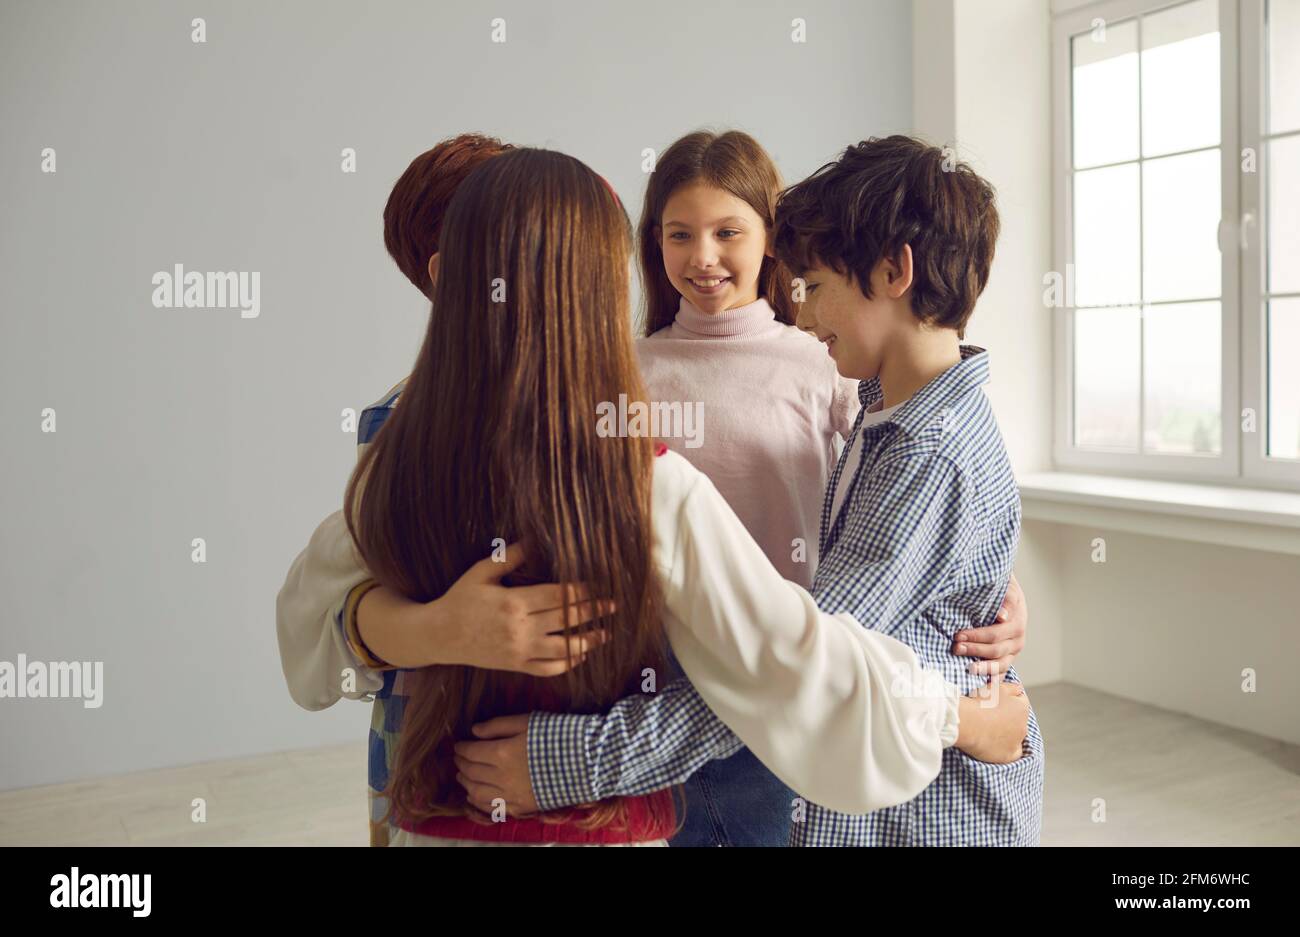 Groupe de quatre enfants heureux positifs de petite école embrassant chacun autre et souriant Banque D'Images